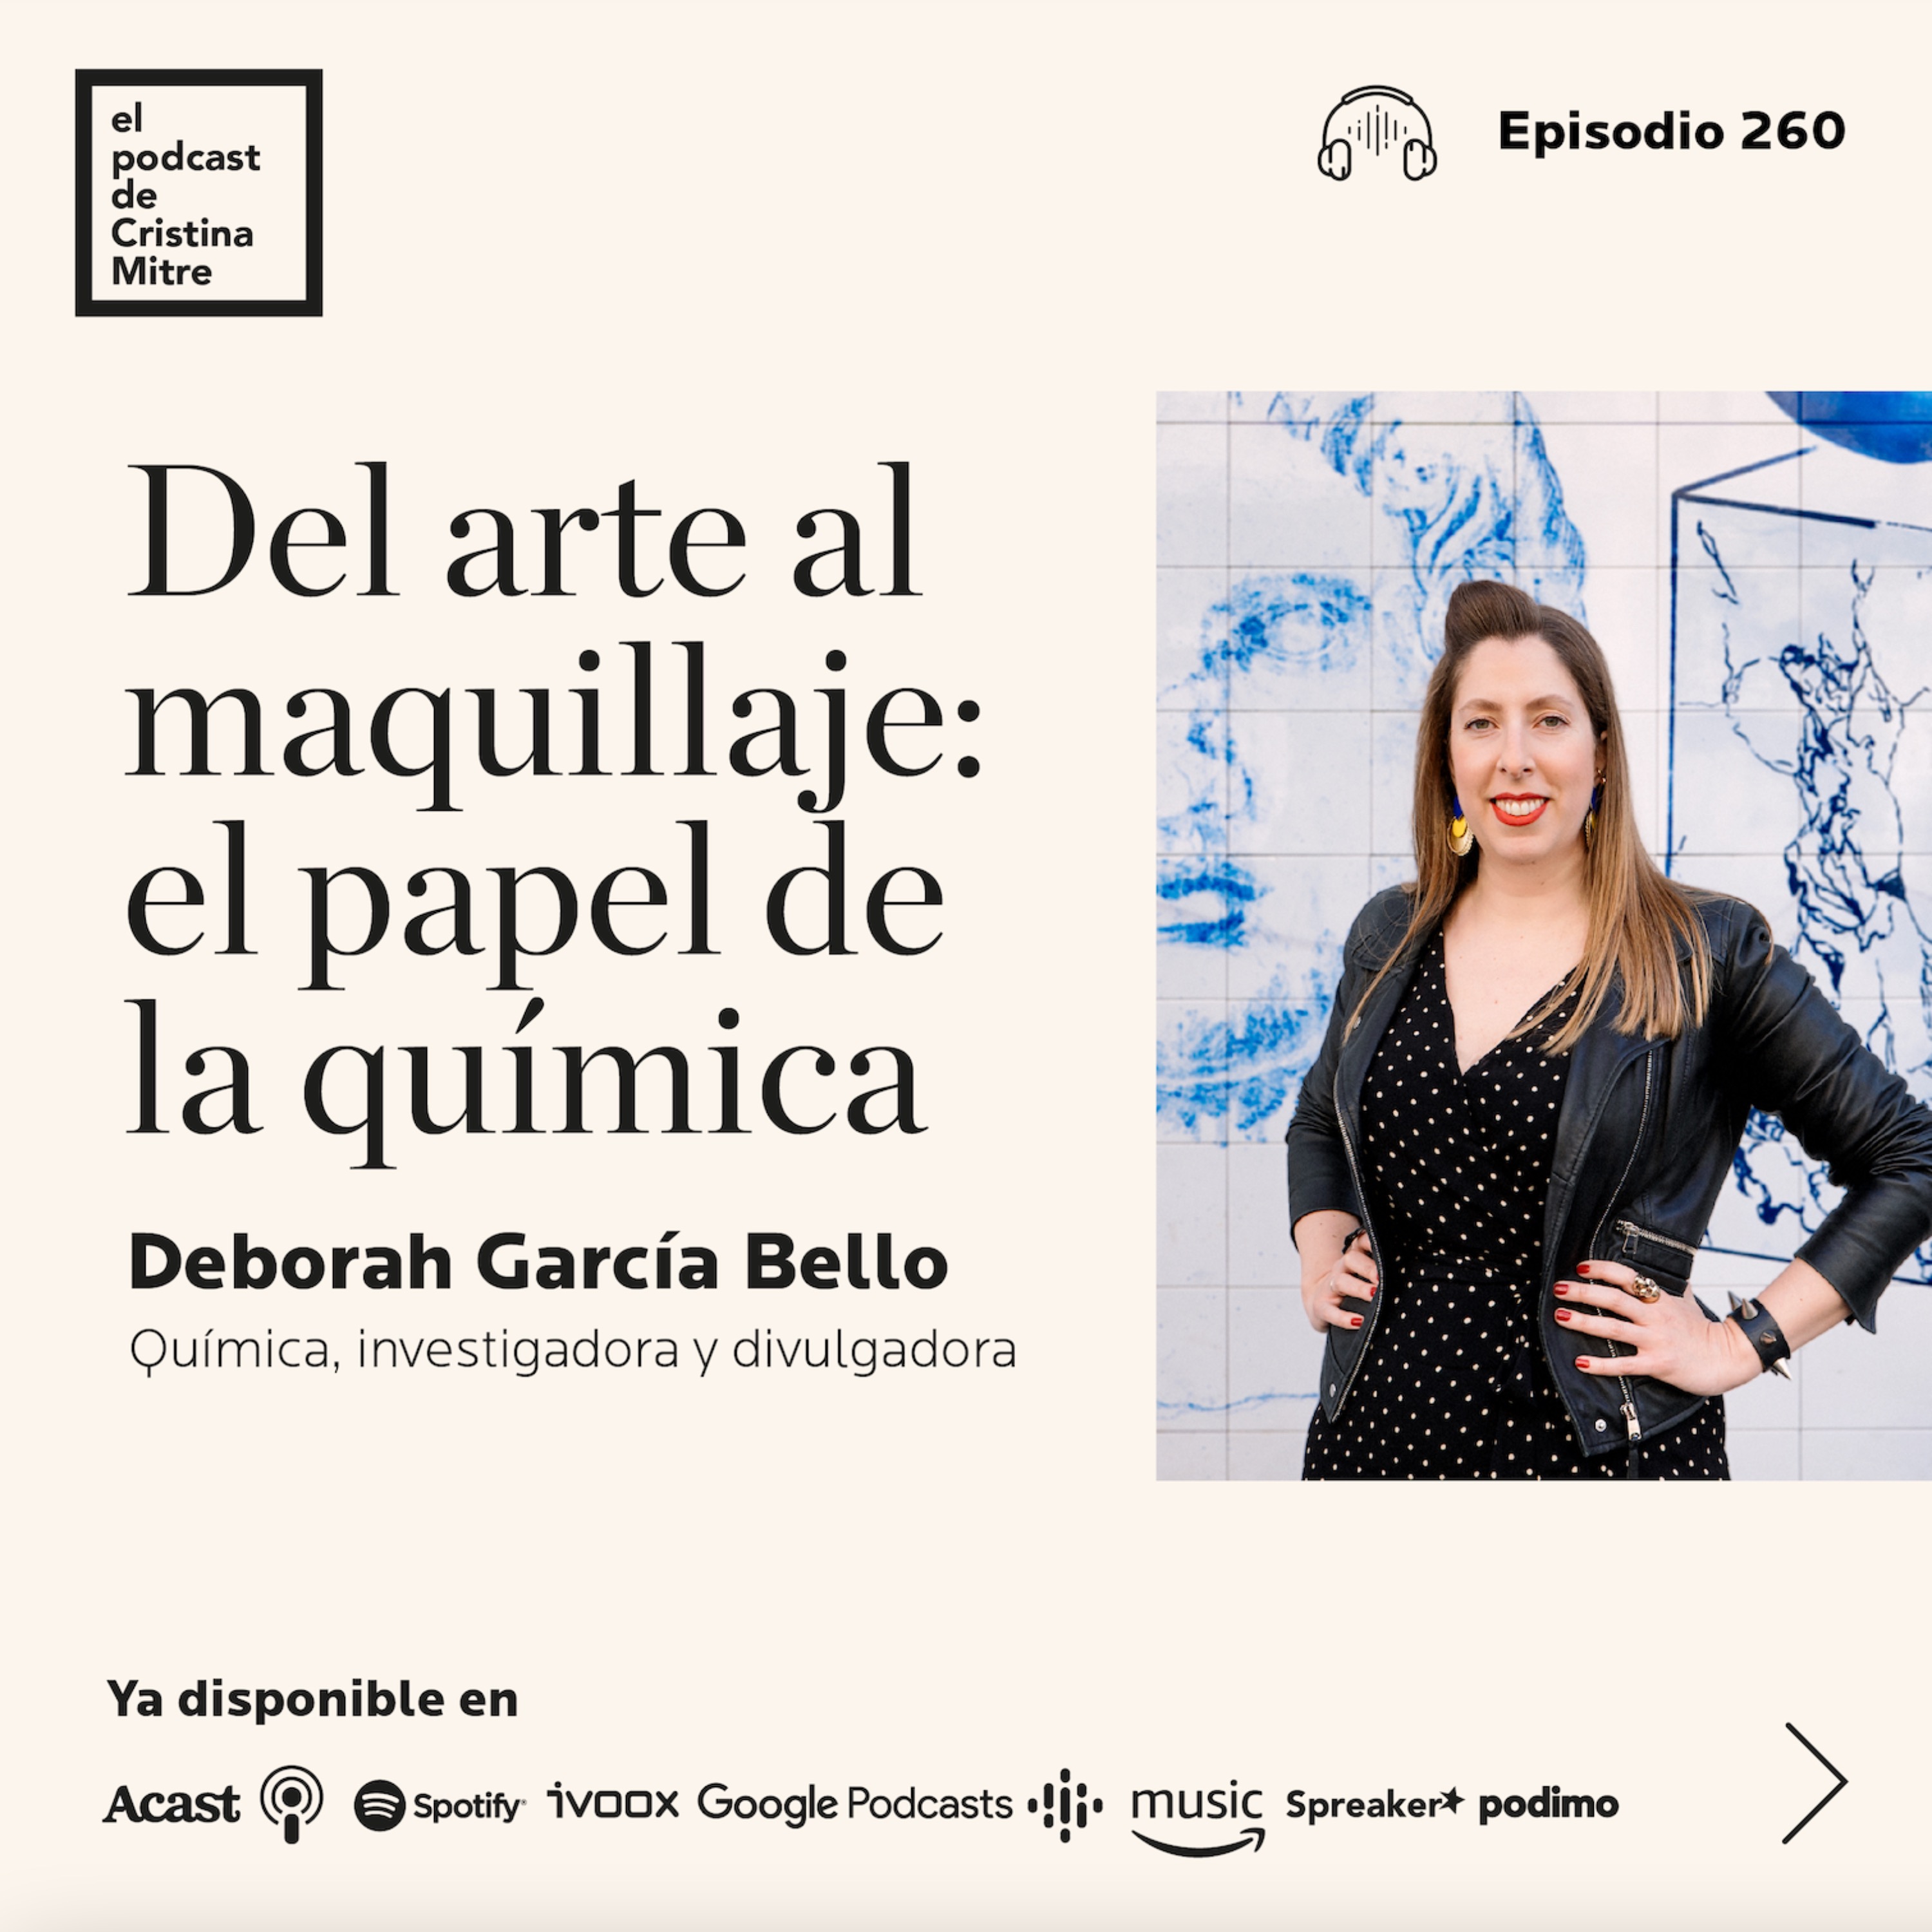 Del arte al maquillaje: el papel de la química, con Deborah García Bello. Episodio 260